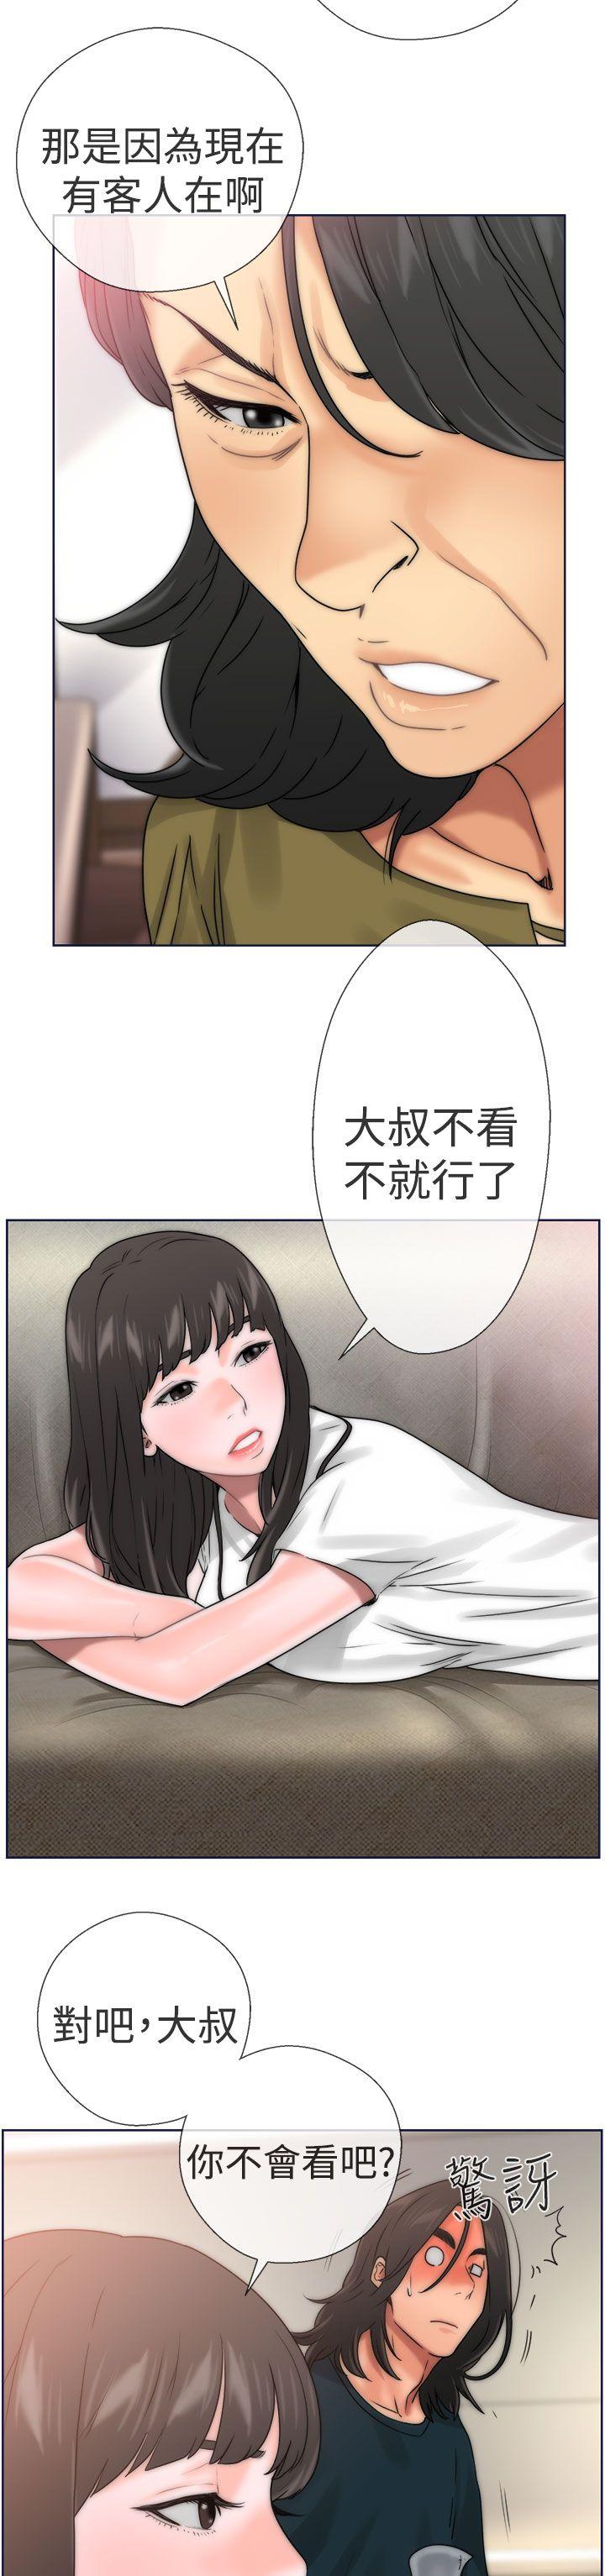 韩国污漫画 解禁:初始的快感 第9话 18